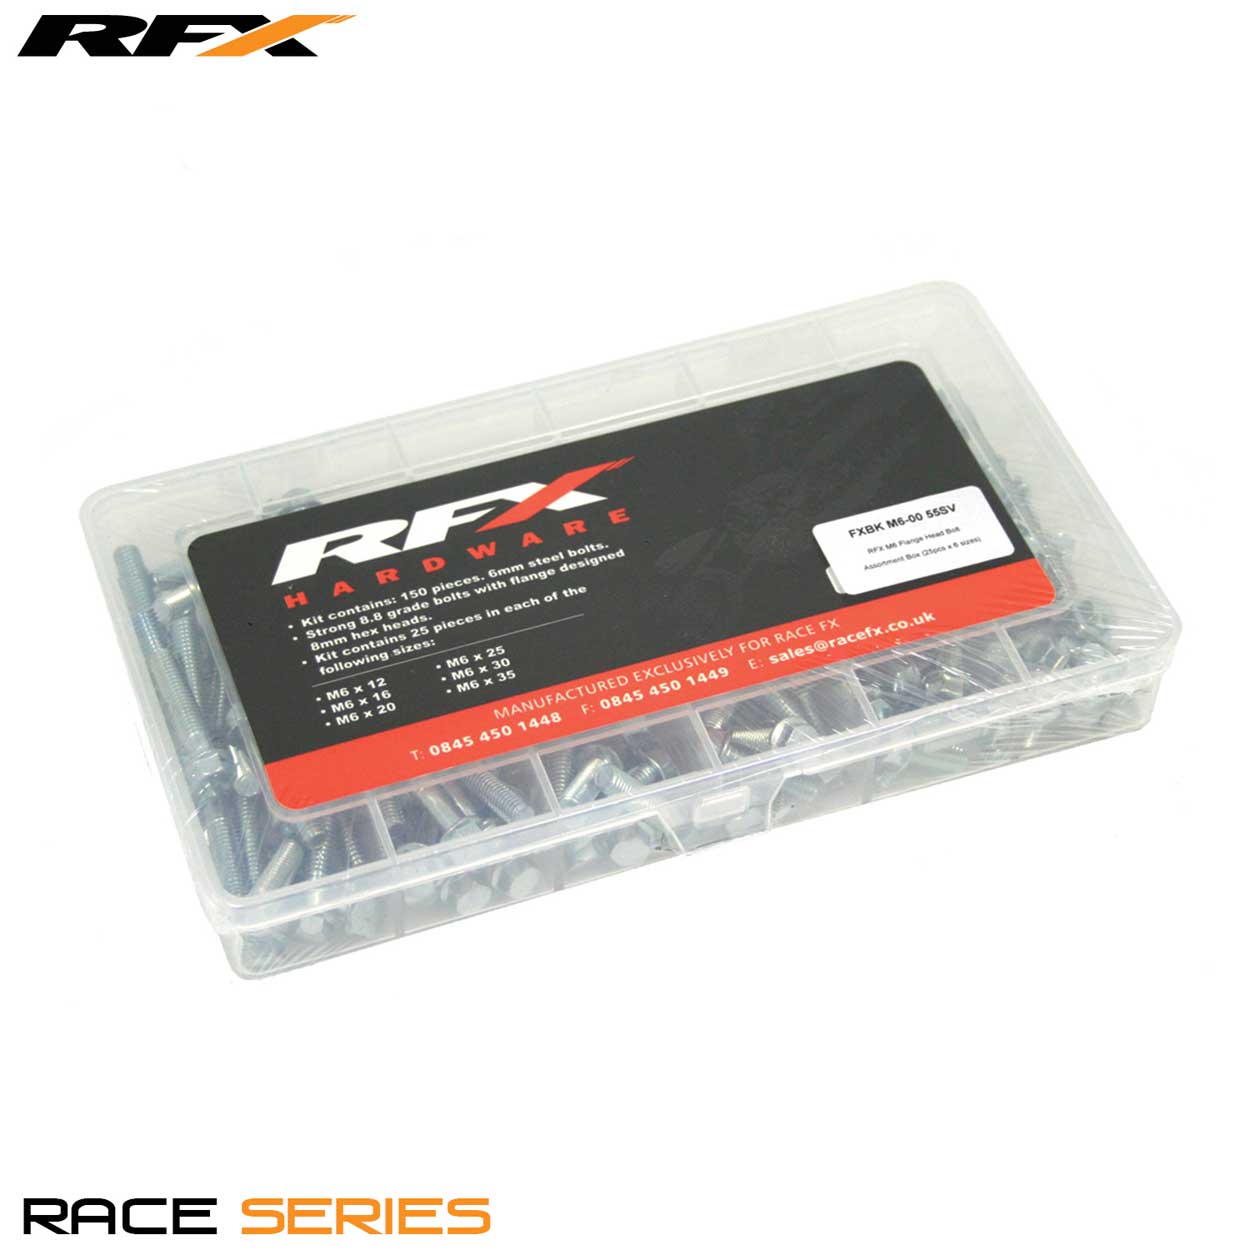 RFX M6 Flange Head Bolt Assortment Box (25pcs x 6 sizes) 12/16/20/25/30/35mm - Silver - RFX